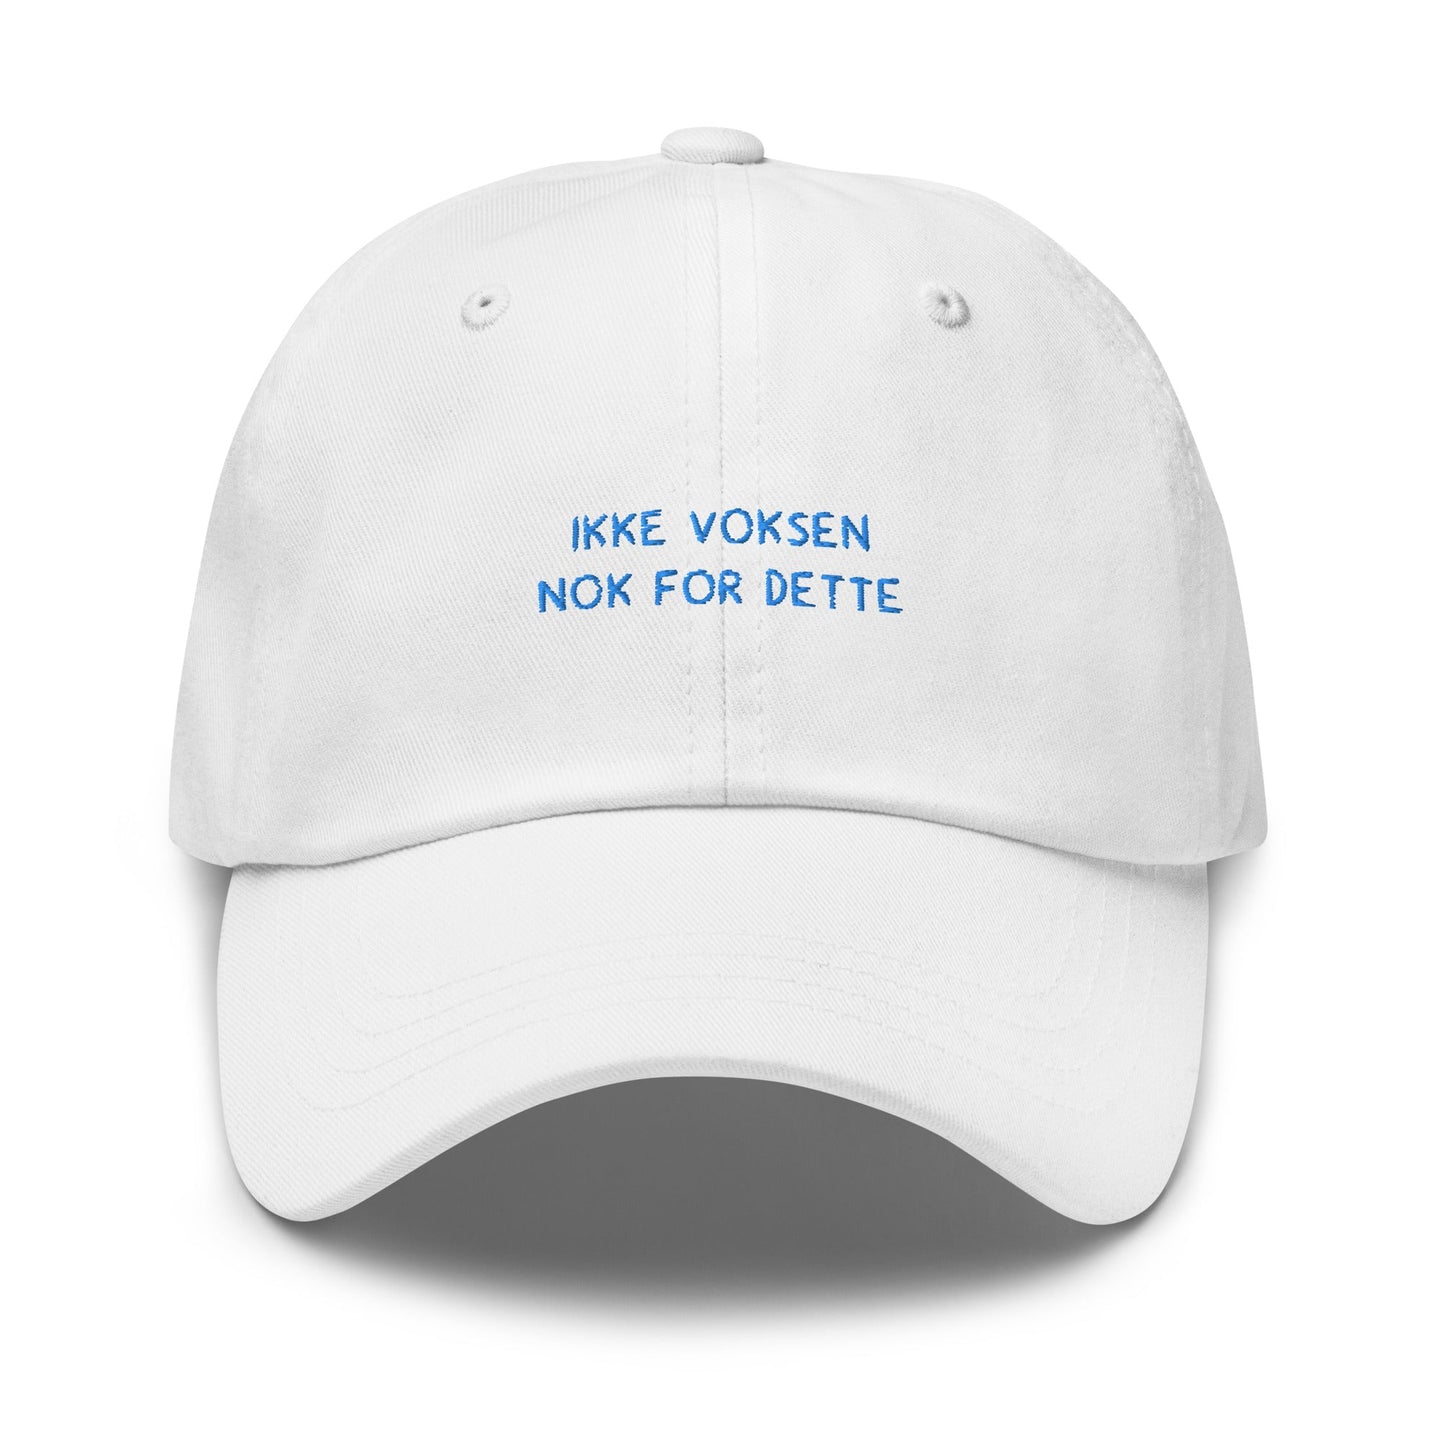 VAGPWR White Ikke voksen - Dad hat